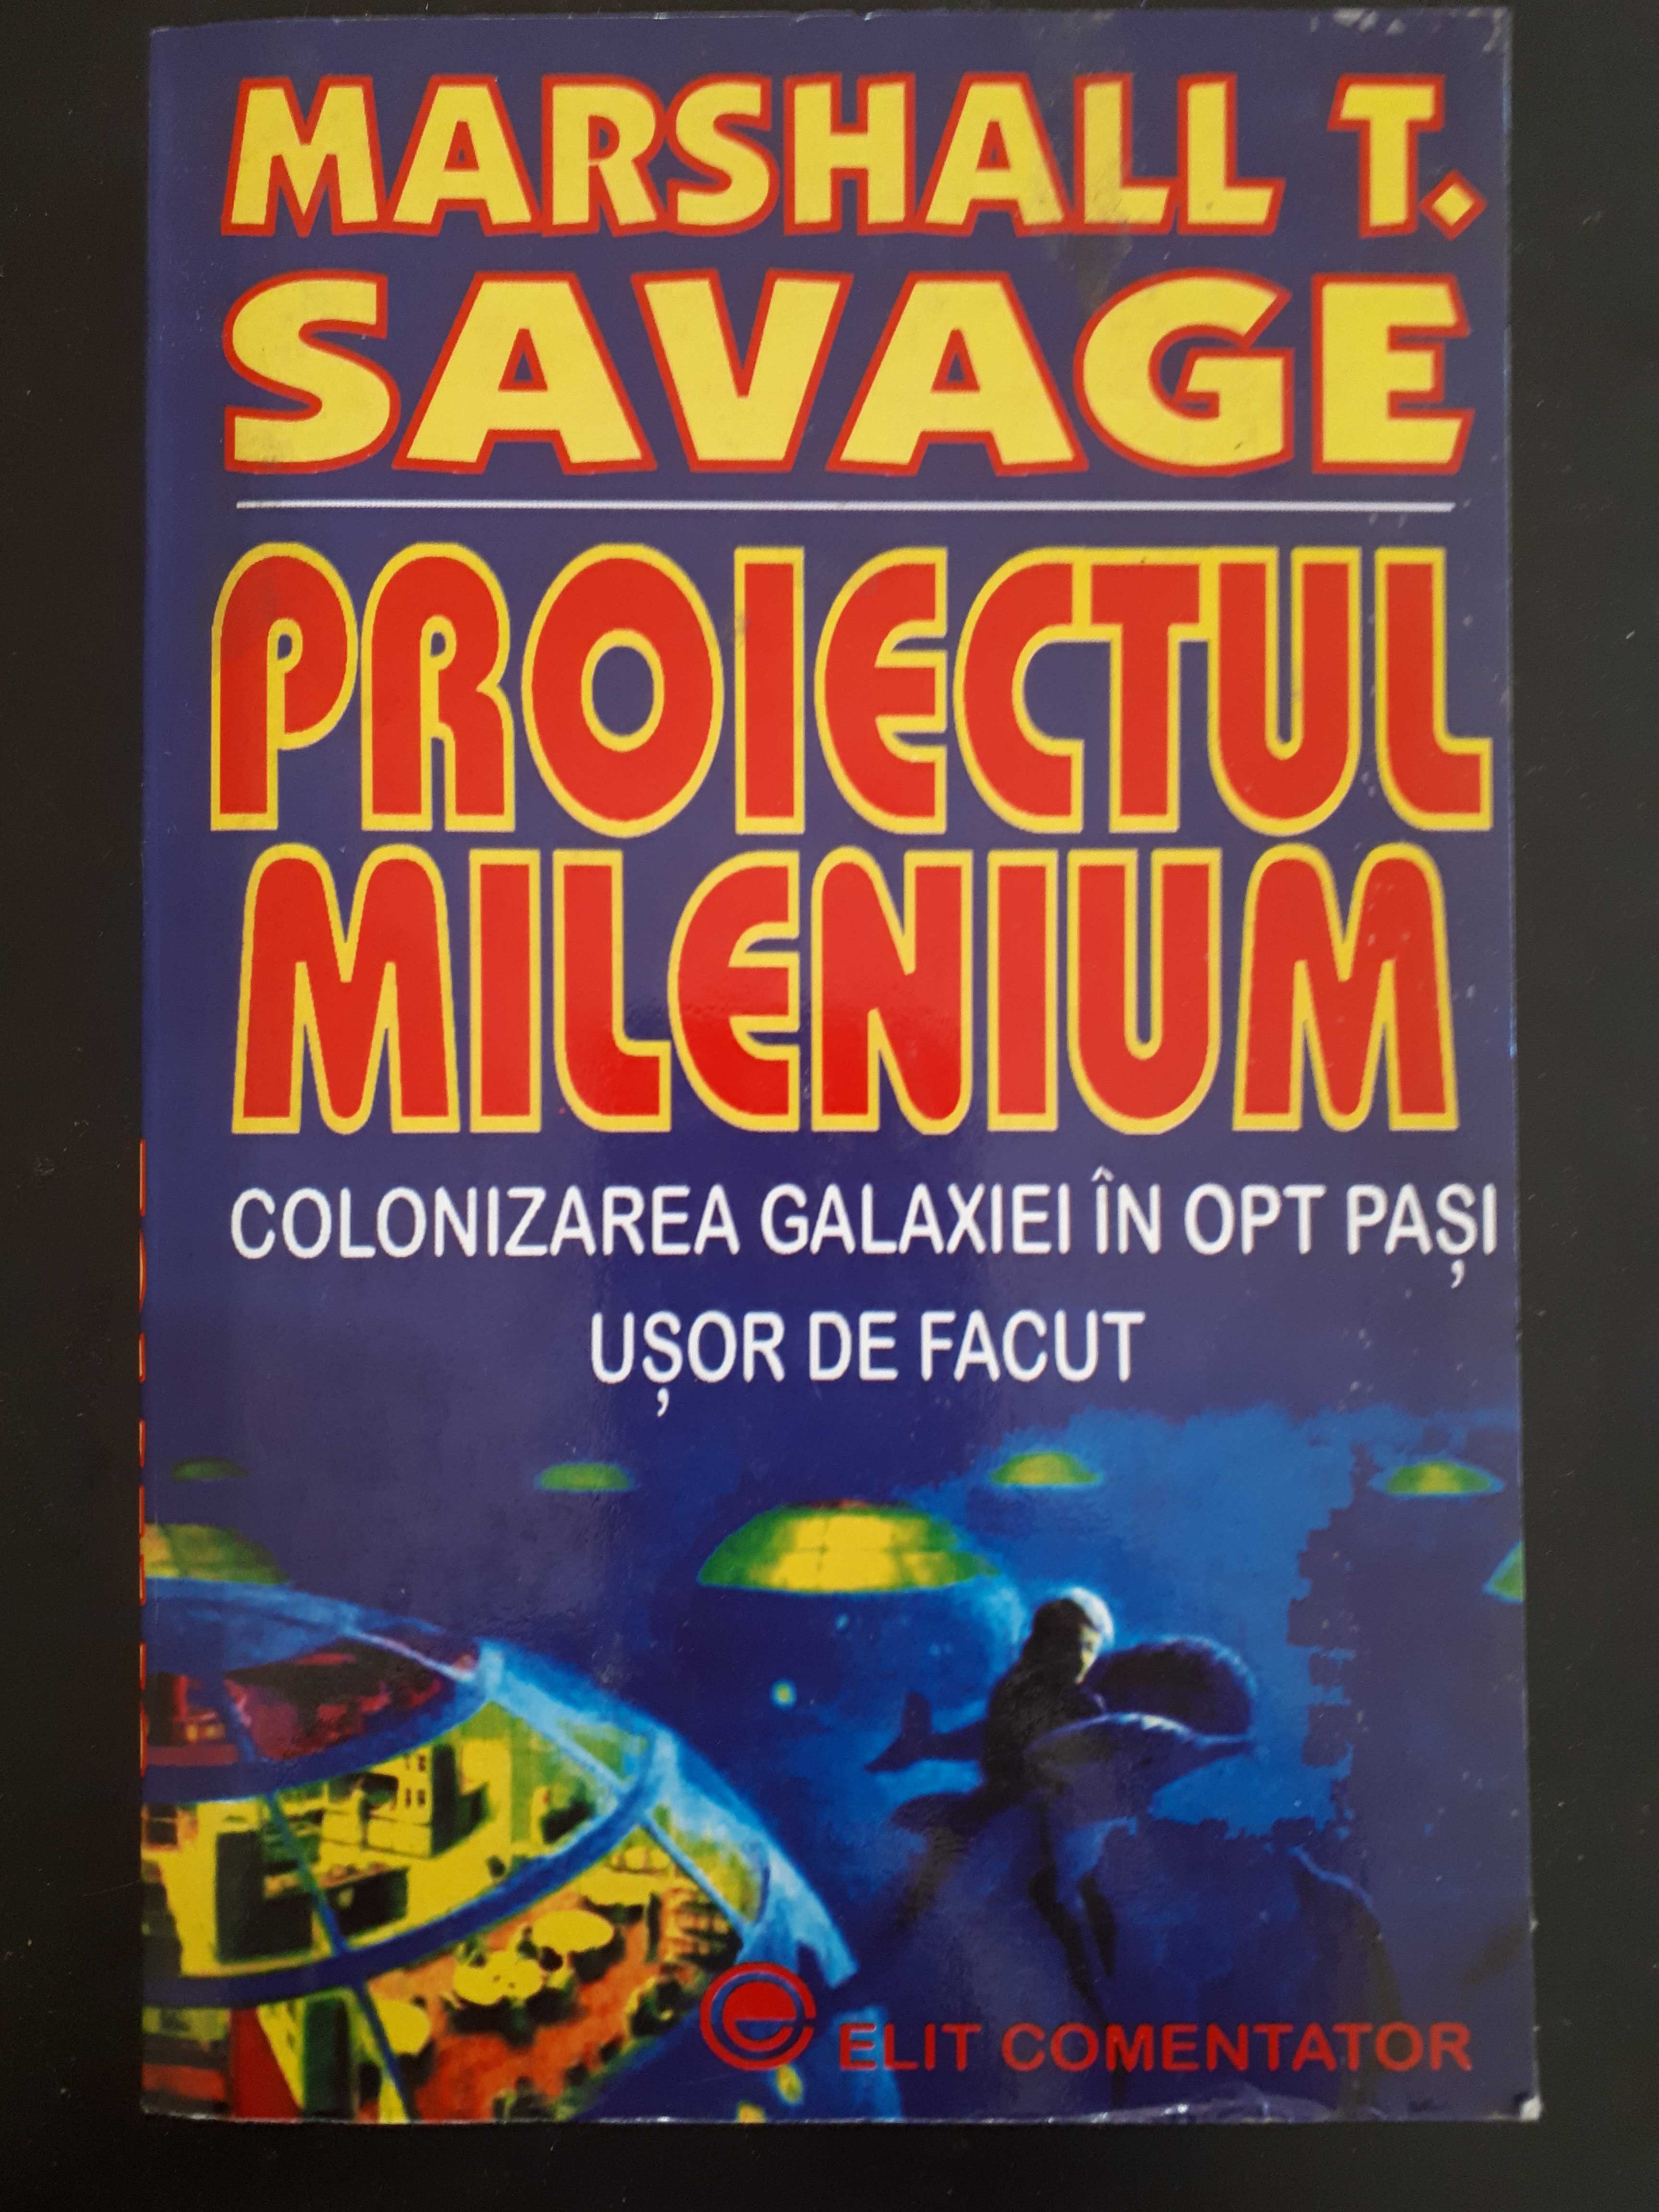 Proiectul Milenium, Colonizarea galaxiei in opt pași, Marshall Savage